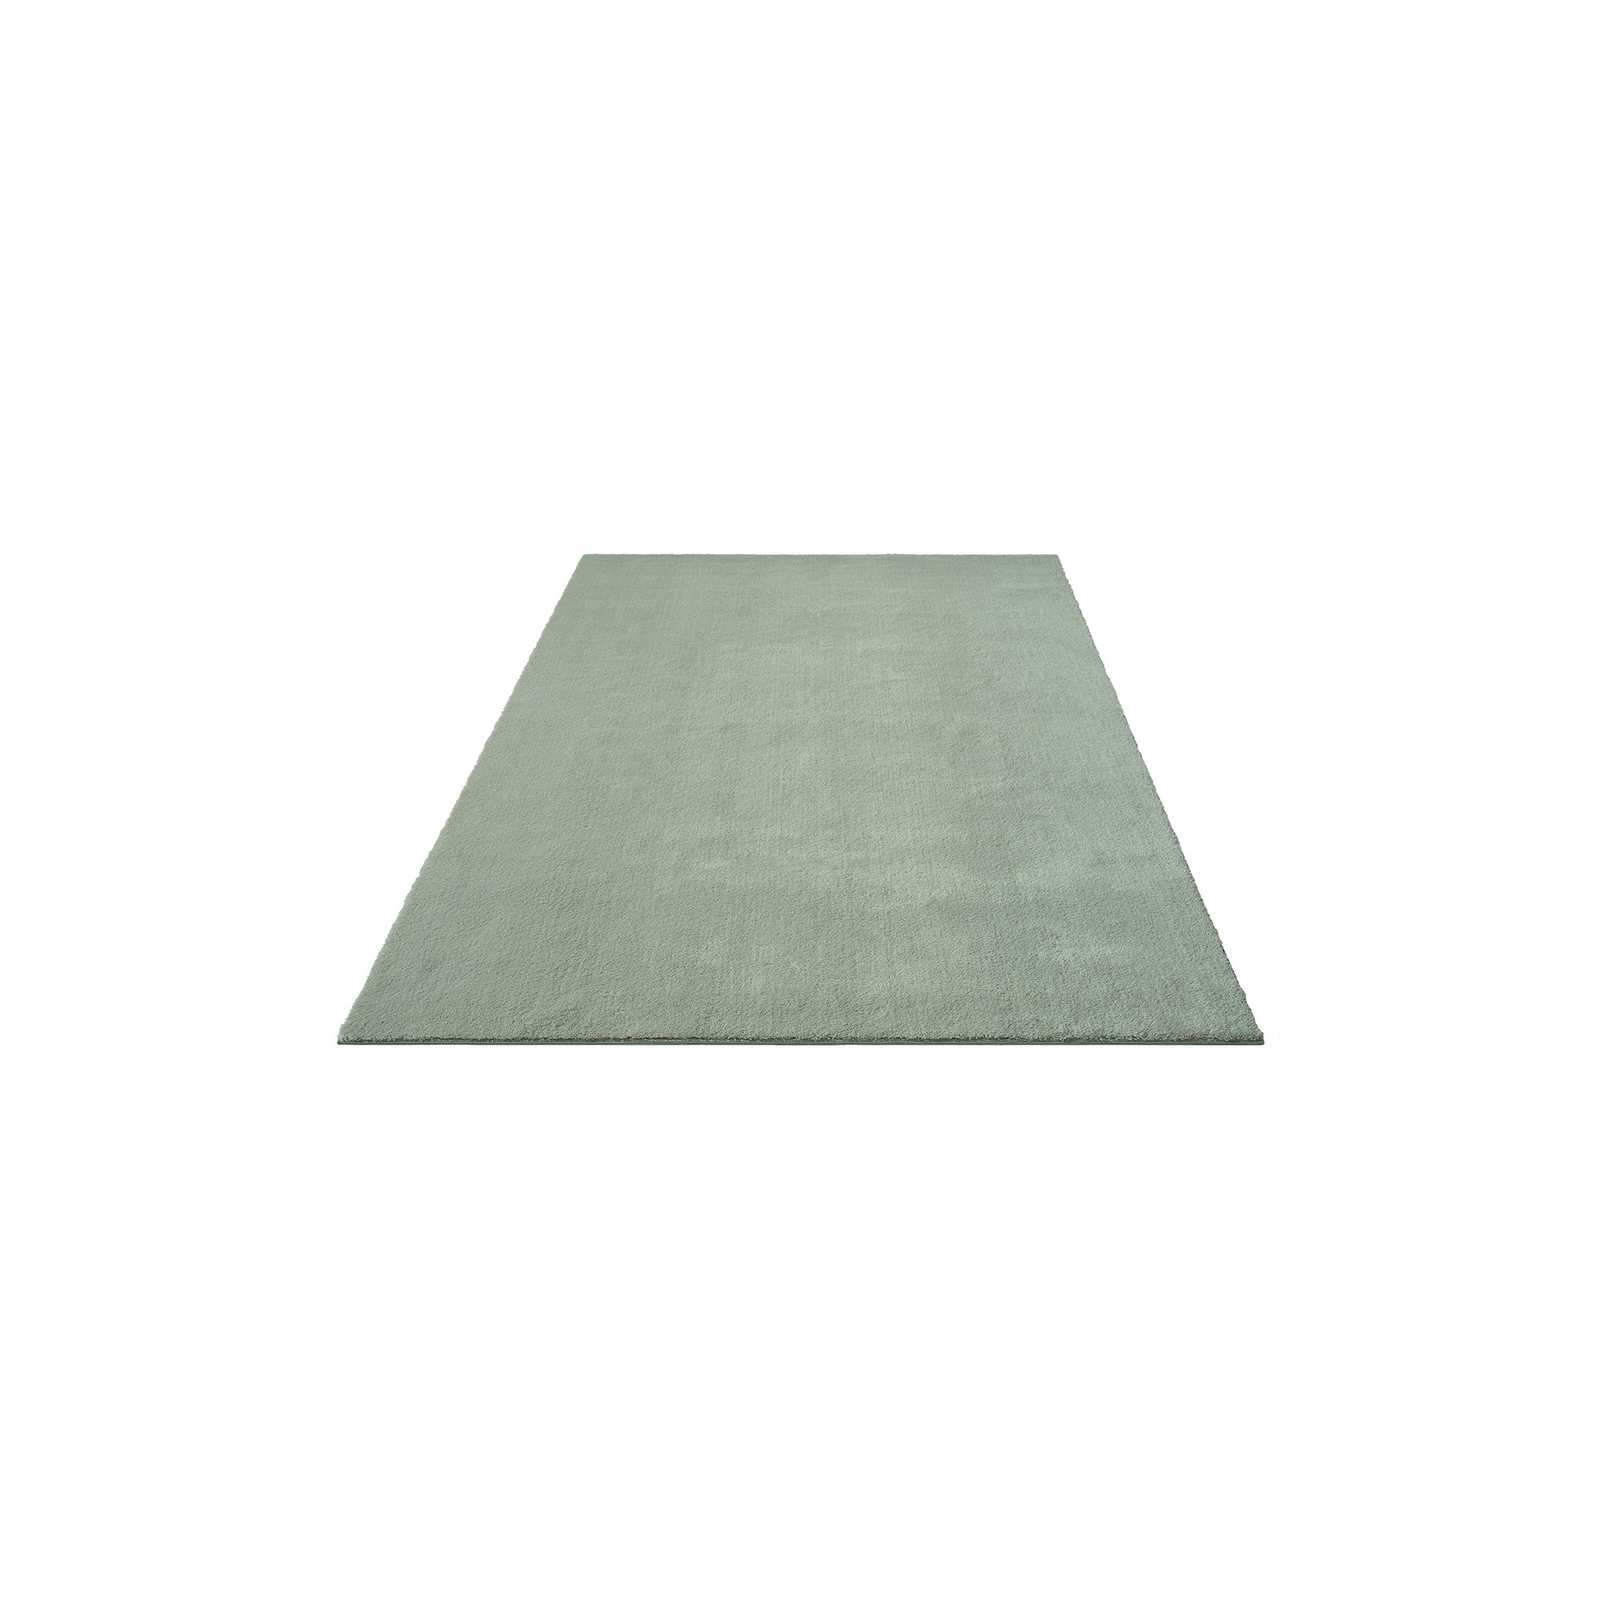 Zachtpolig tapijt in groen - 200 x 140 cm
